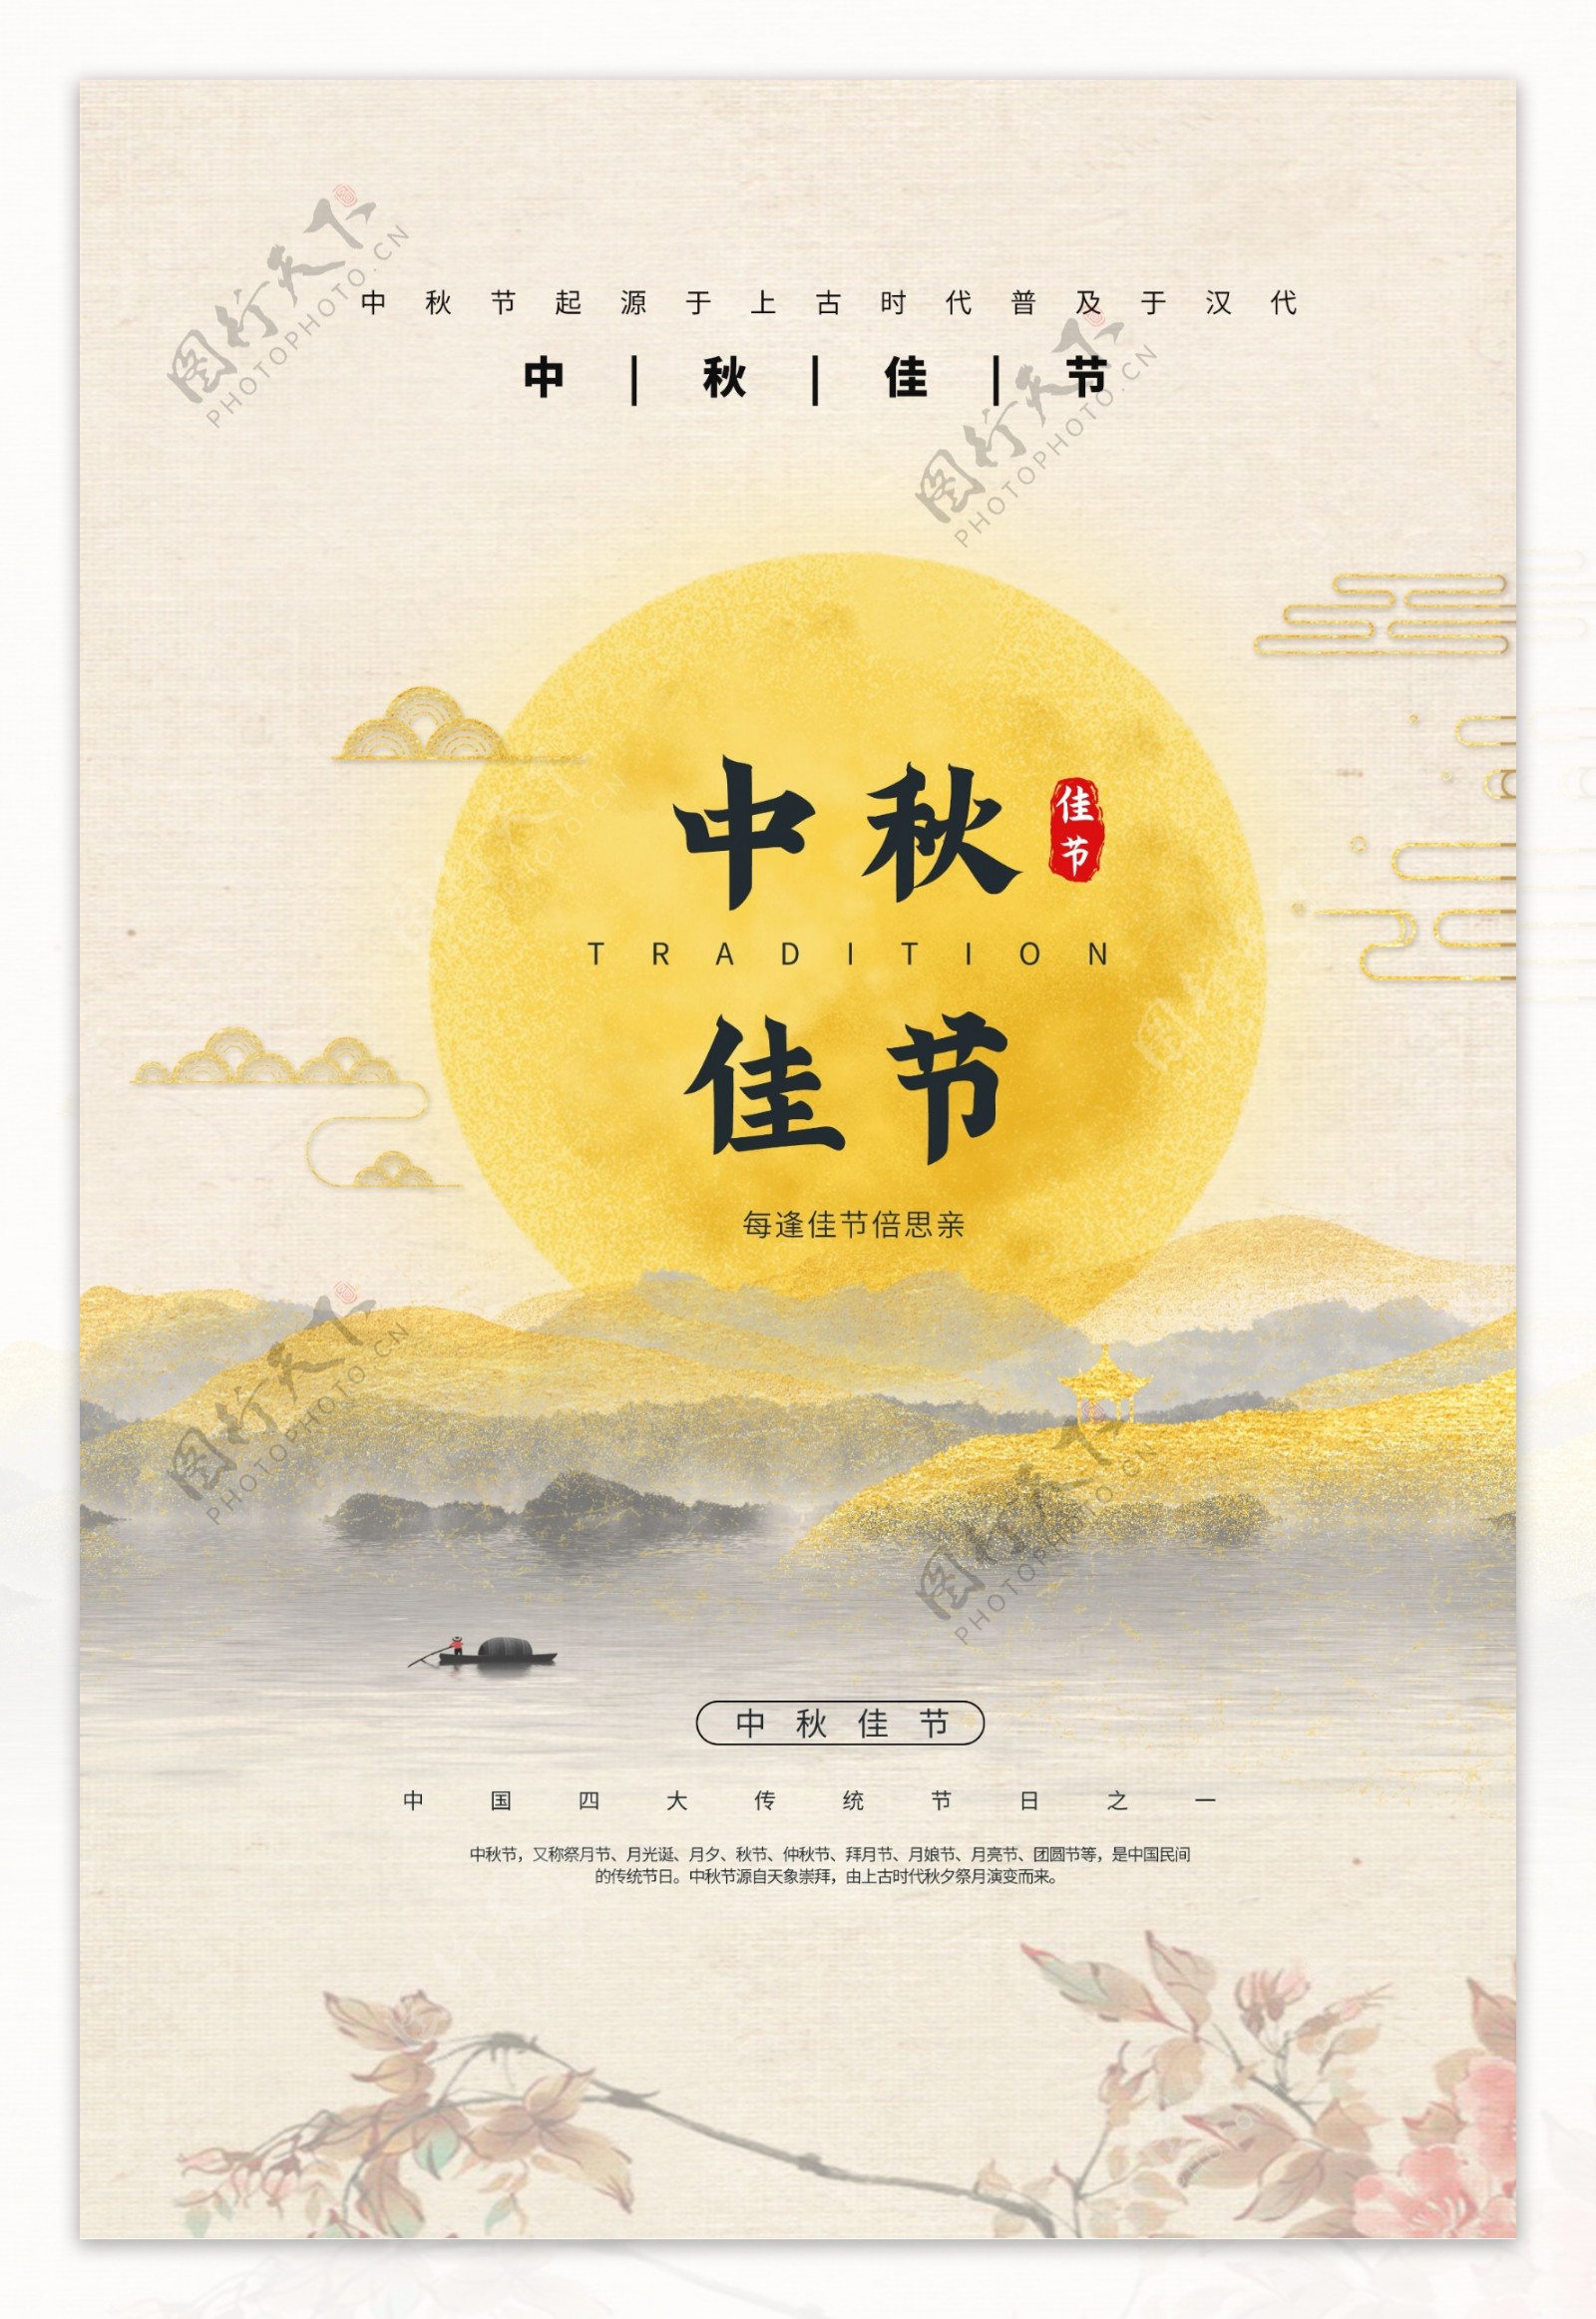 中秋佳节传统节日宣传海报素材